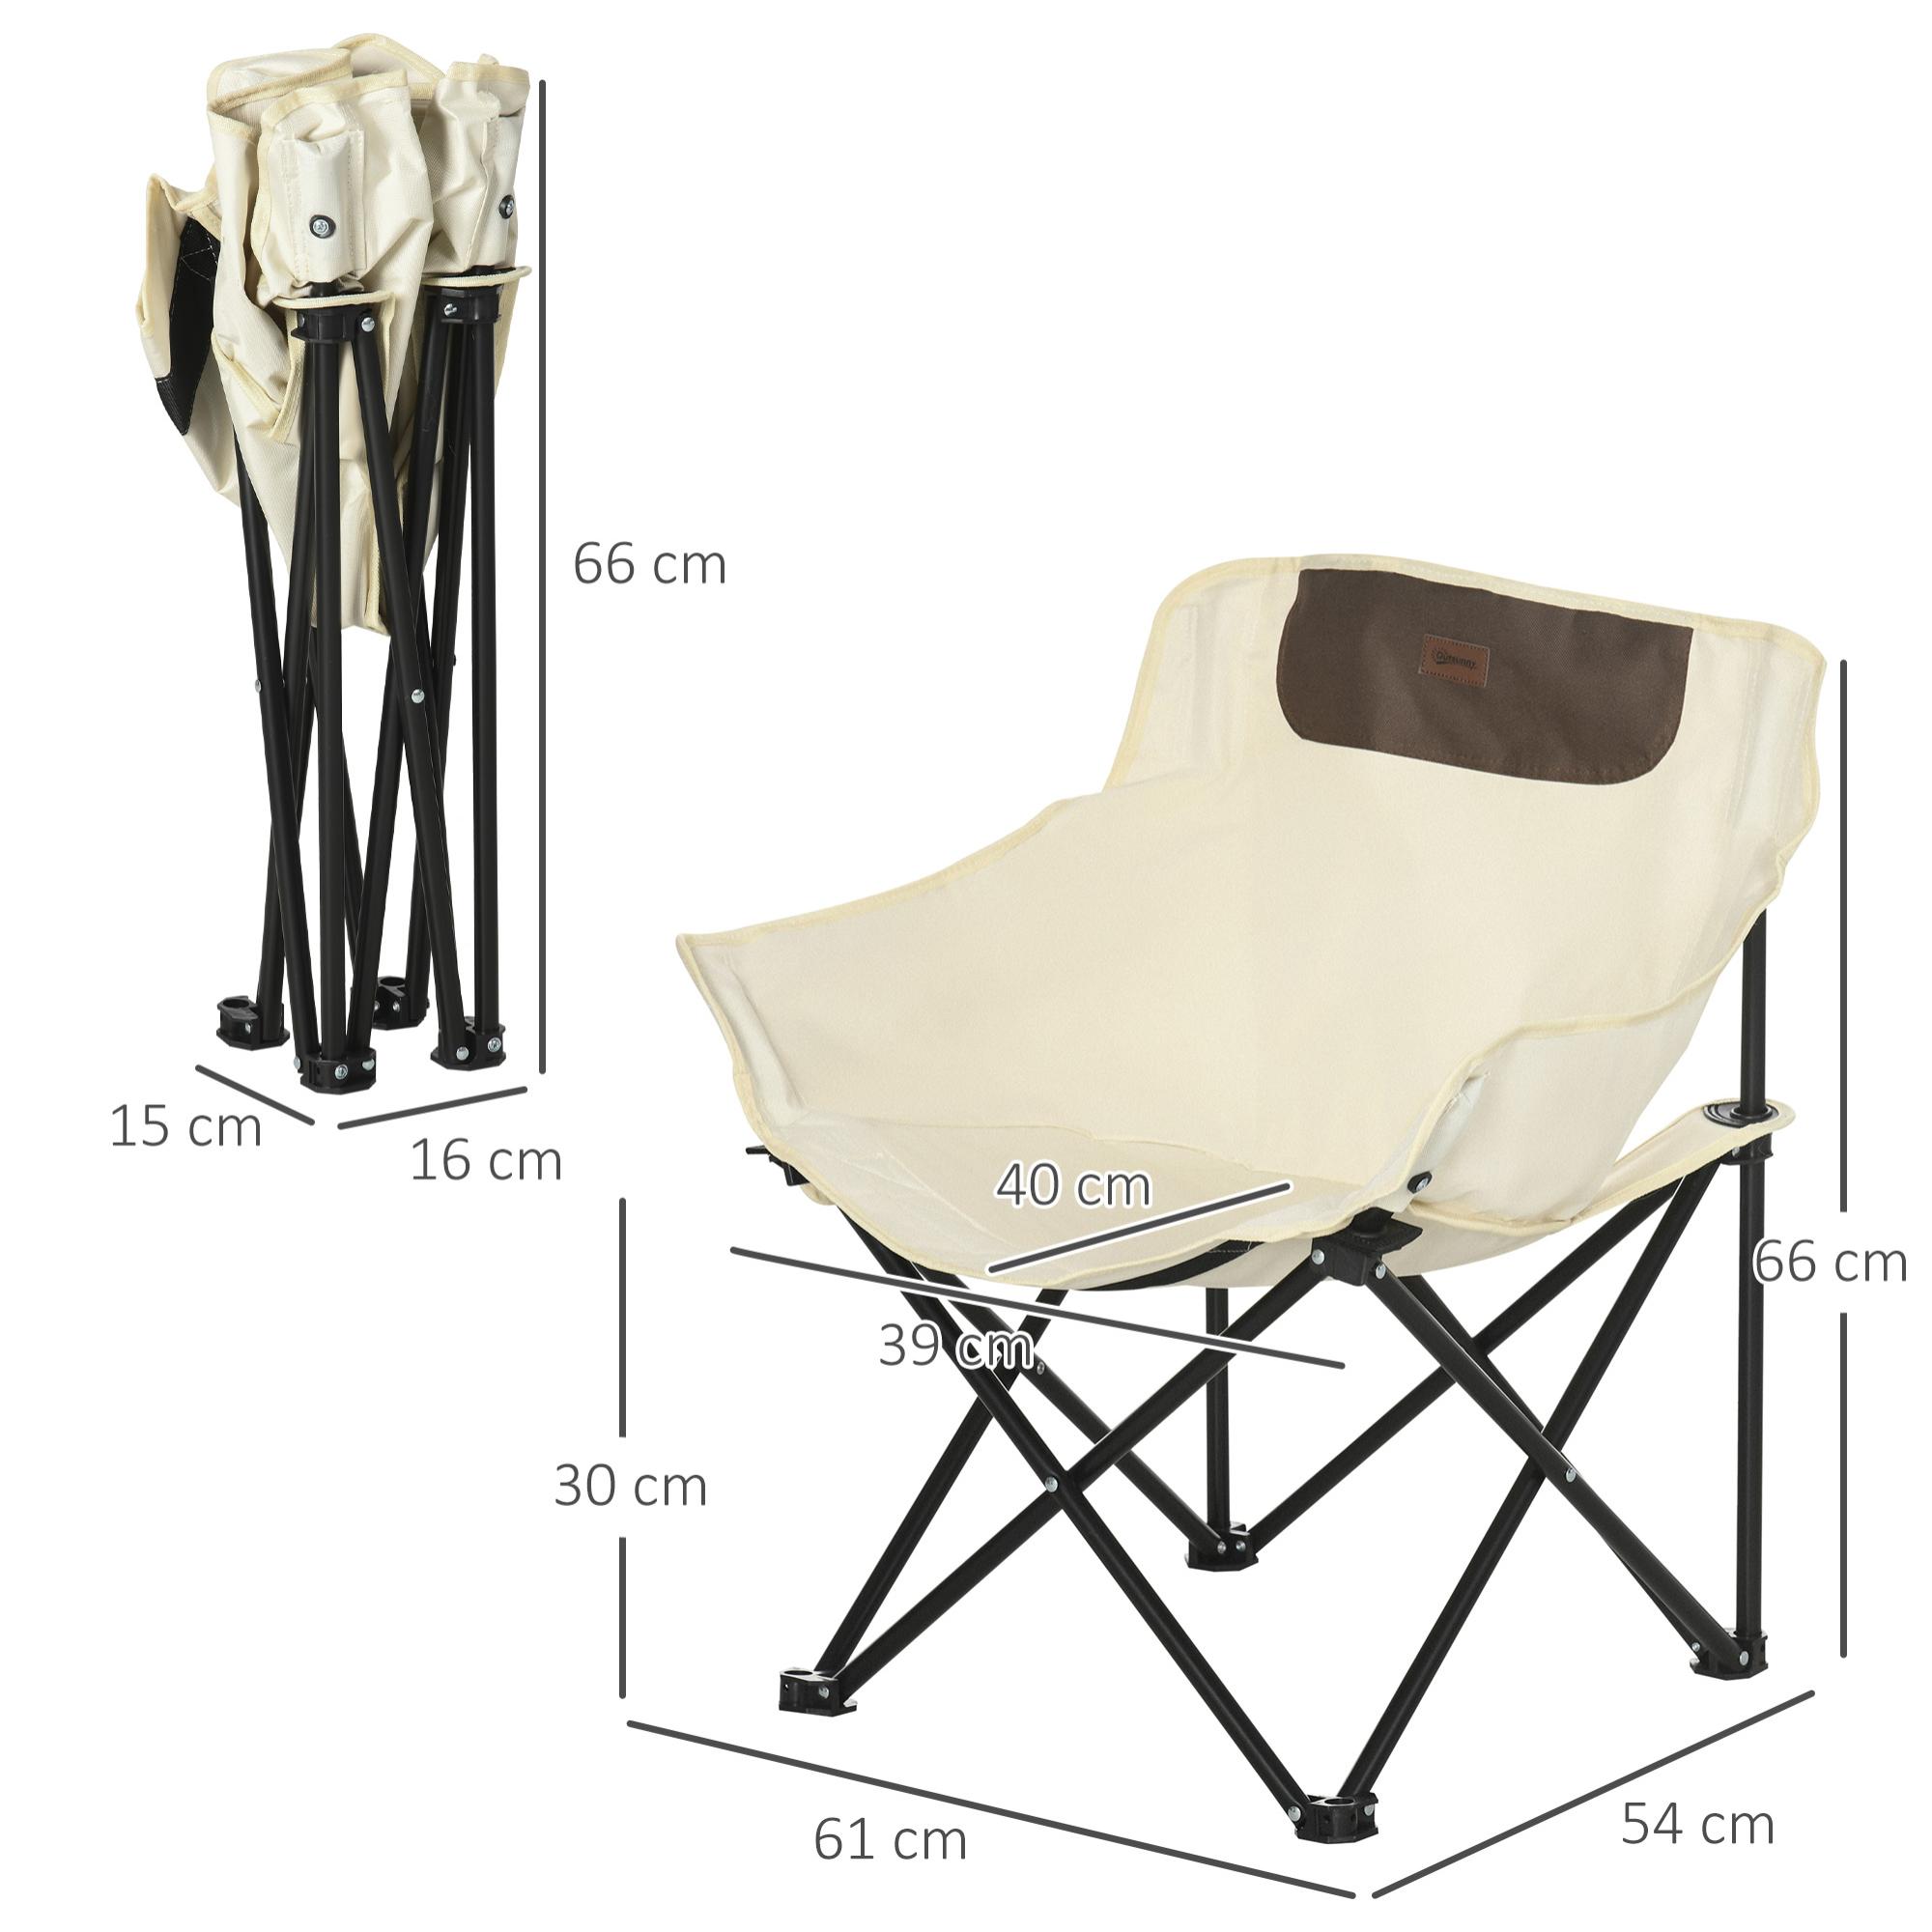 Chaise de camping pliable avec sac de transport et pochette de rangement acier oxford beige